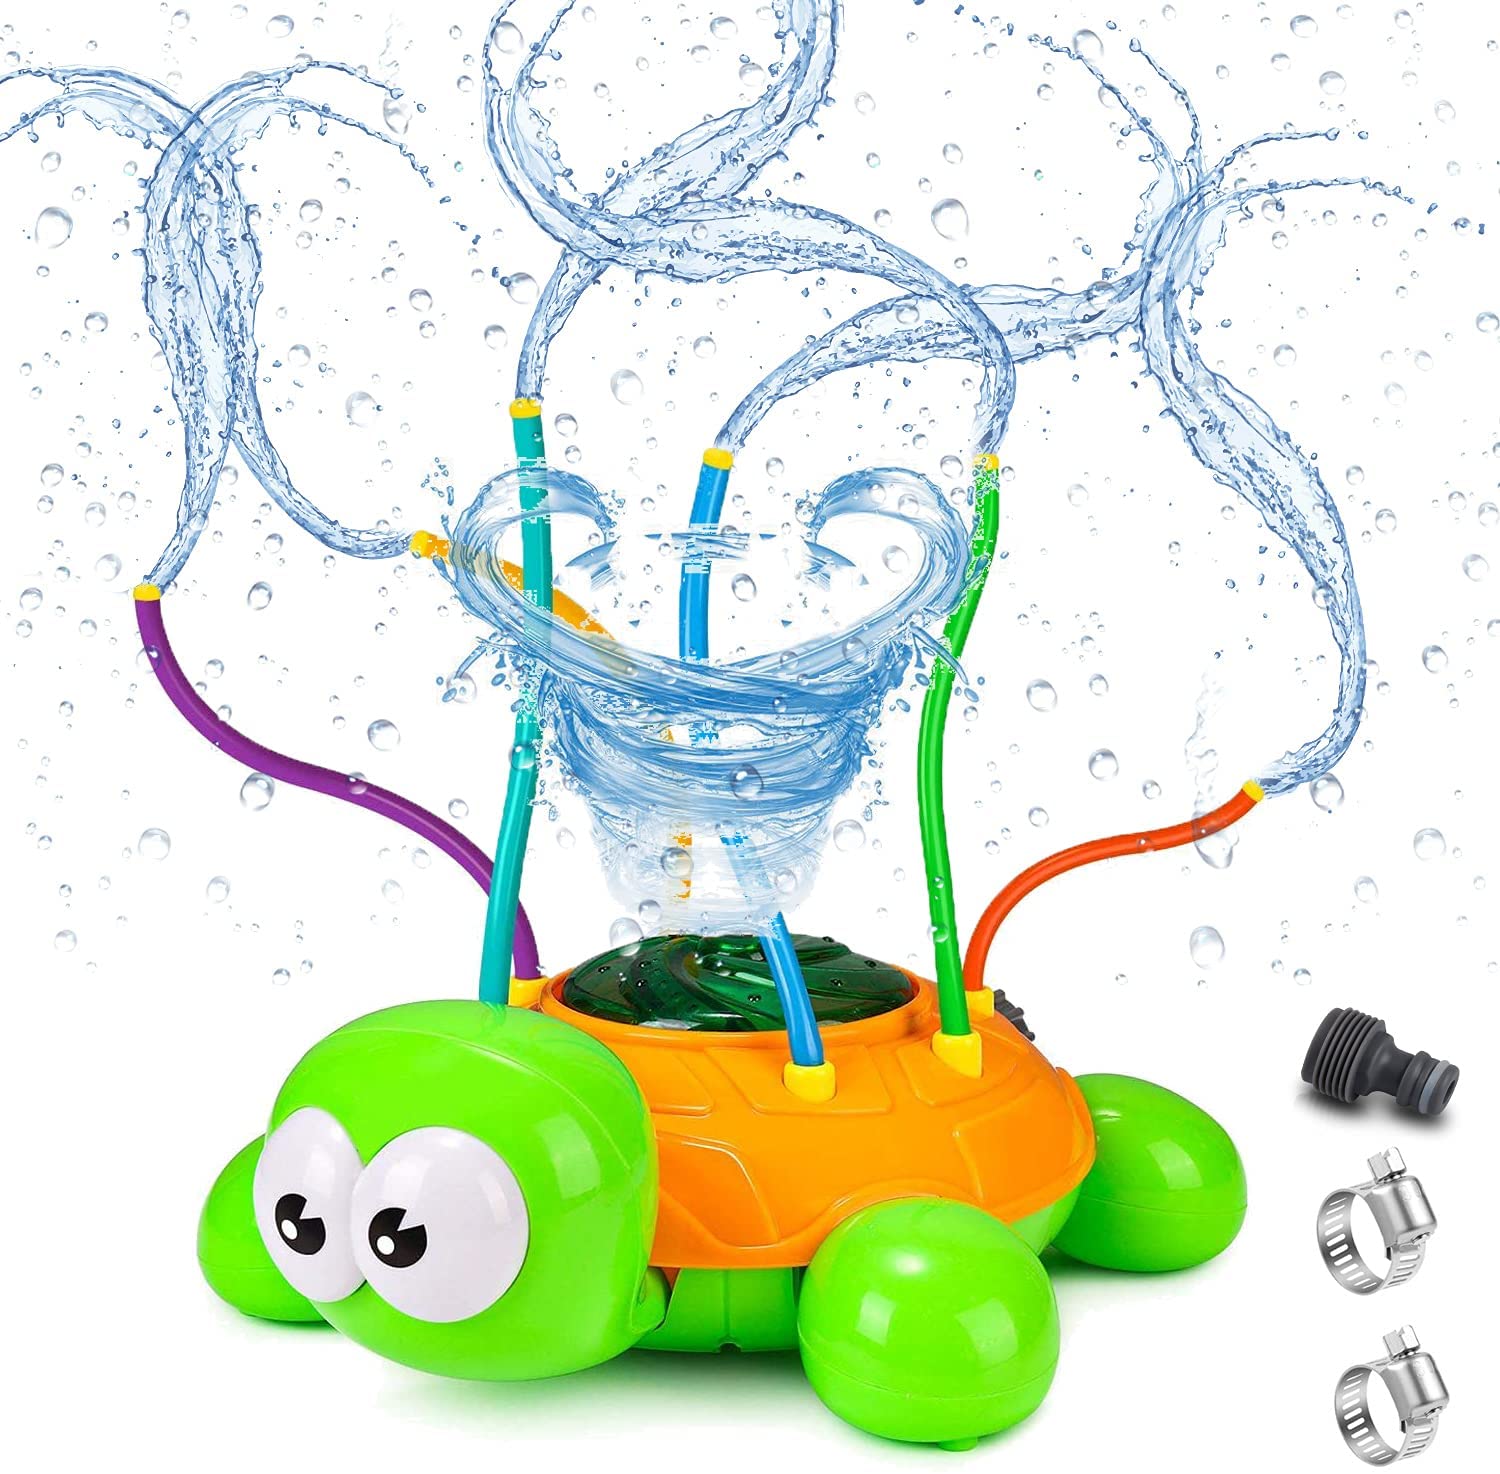 Water Spray Sprinkler for Kids, Spinning Turtle Water Sprinkler Toy with Wiggle Tubes for Kids & Toddler Splashing Fun Backyard & L